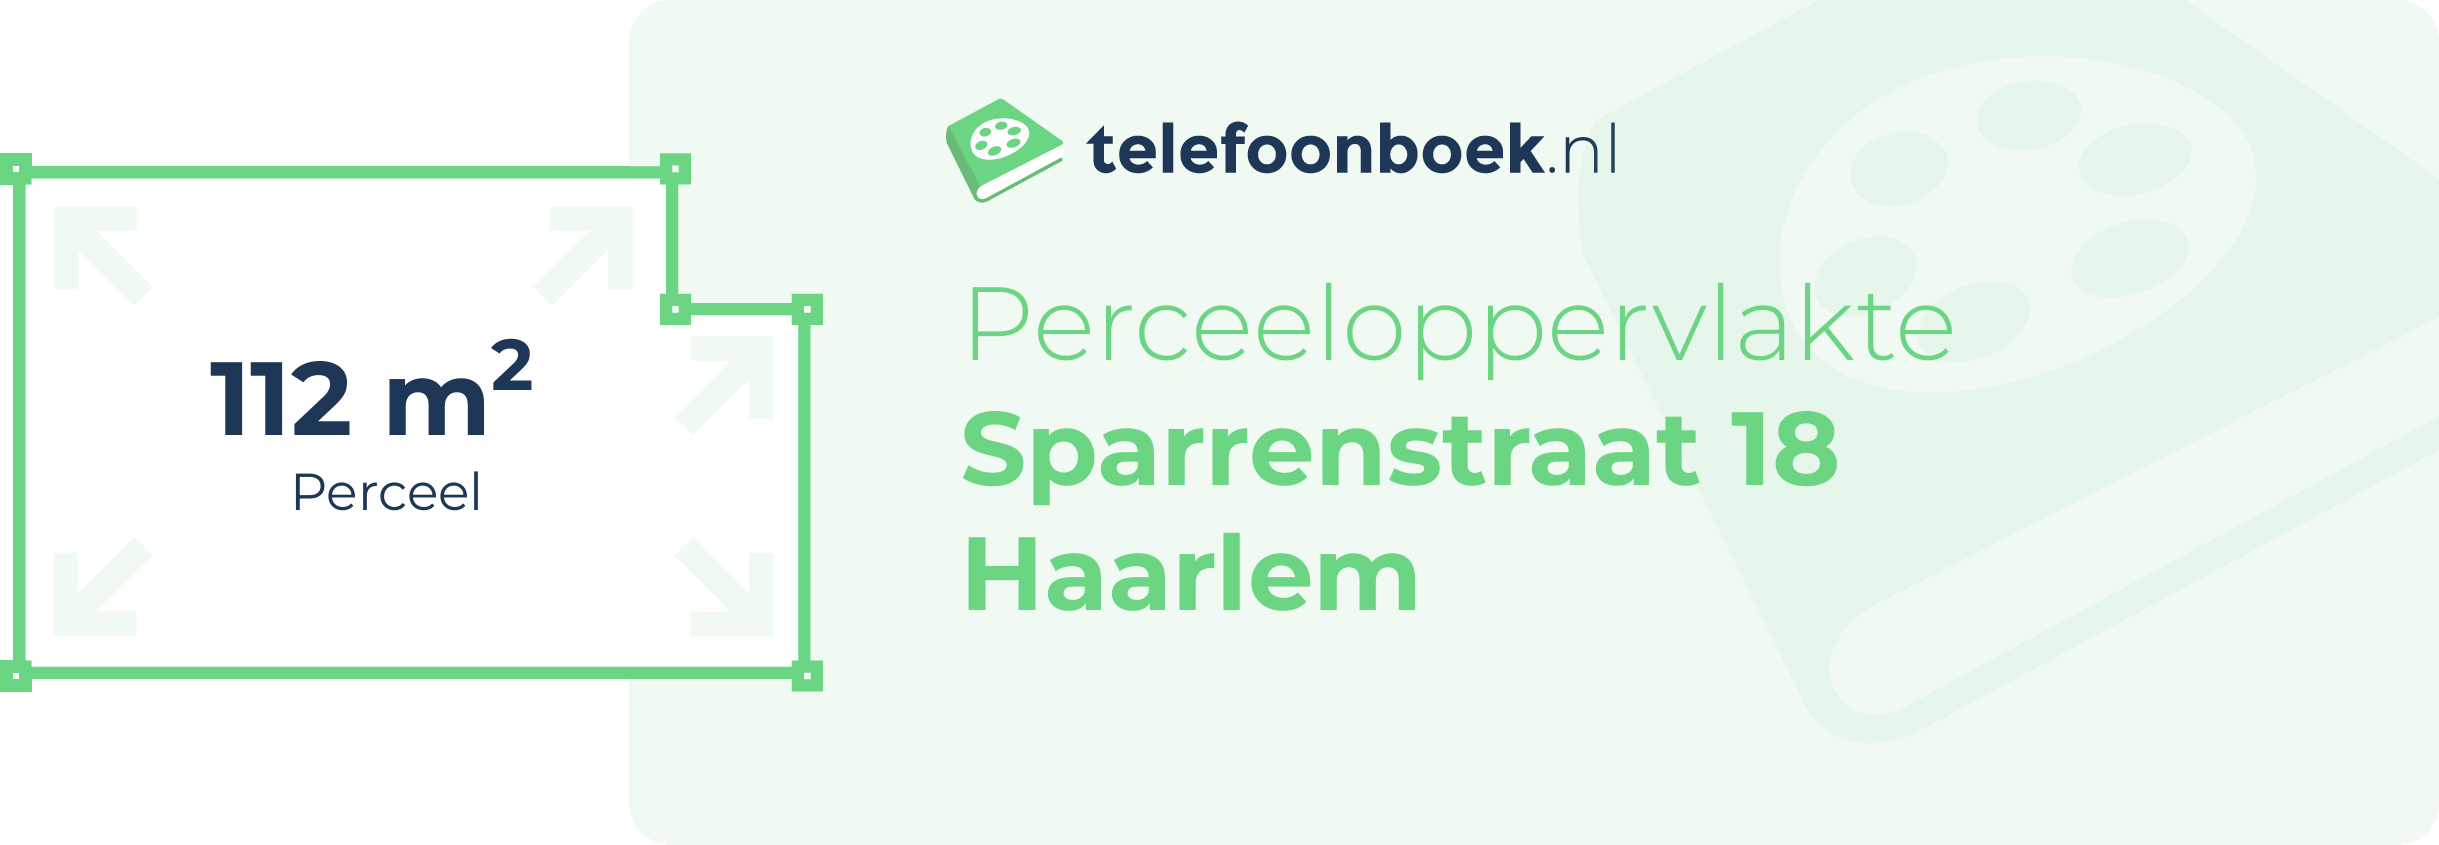 Perceeloppervlakte Sparrenstraat 18 Haarlem